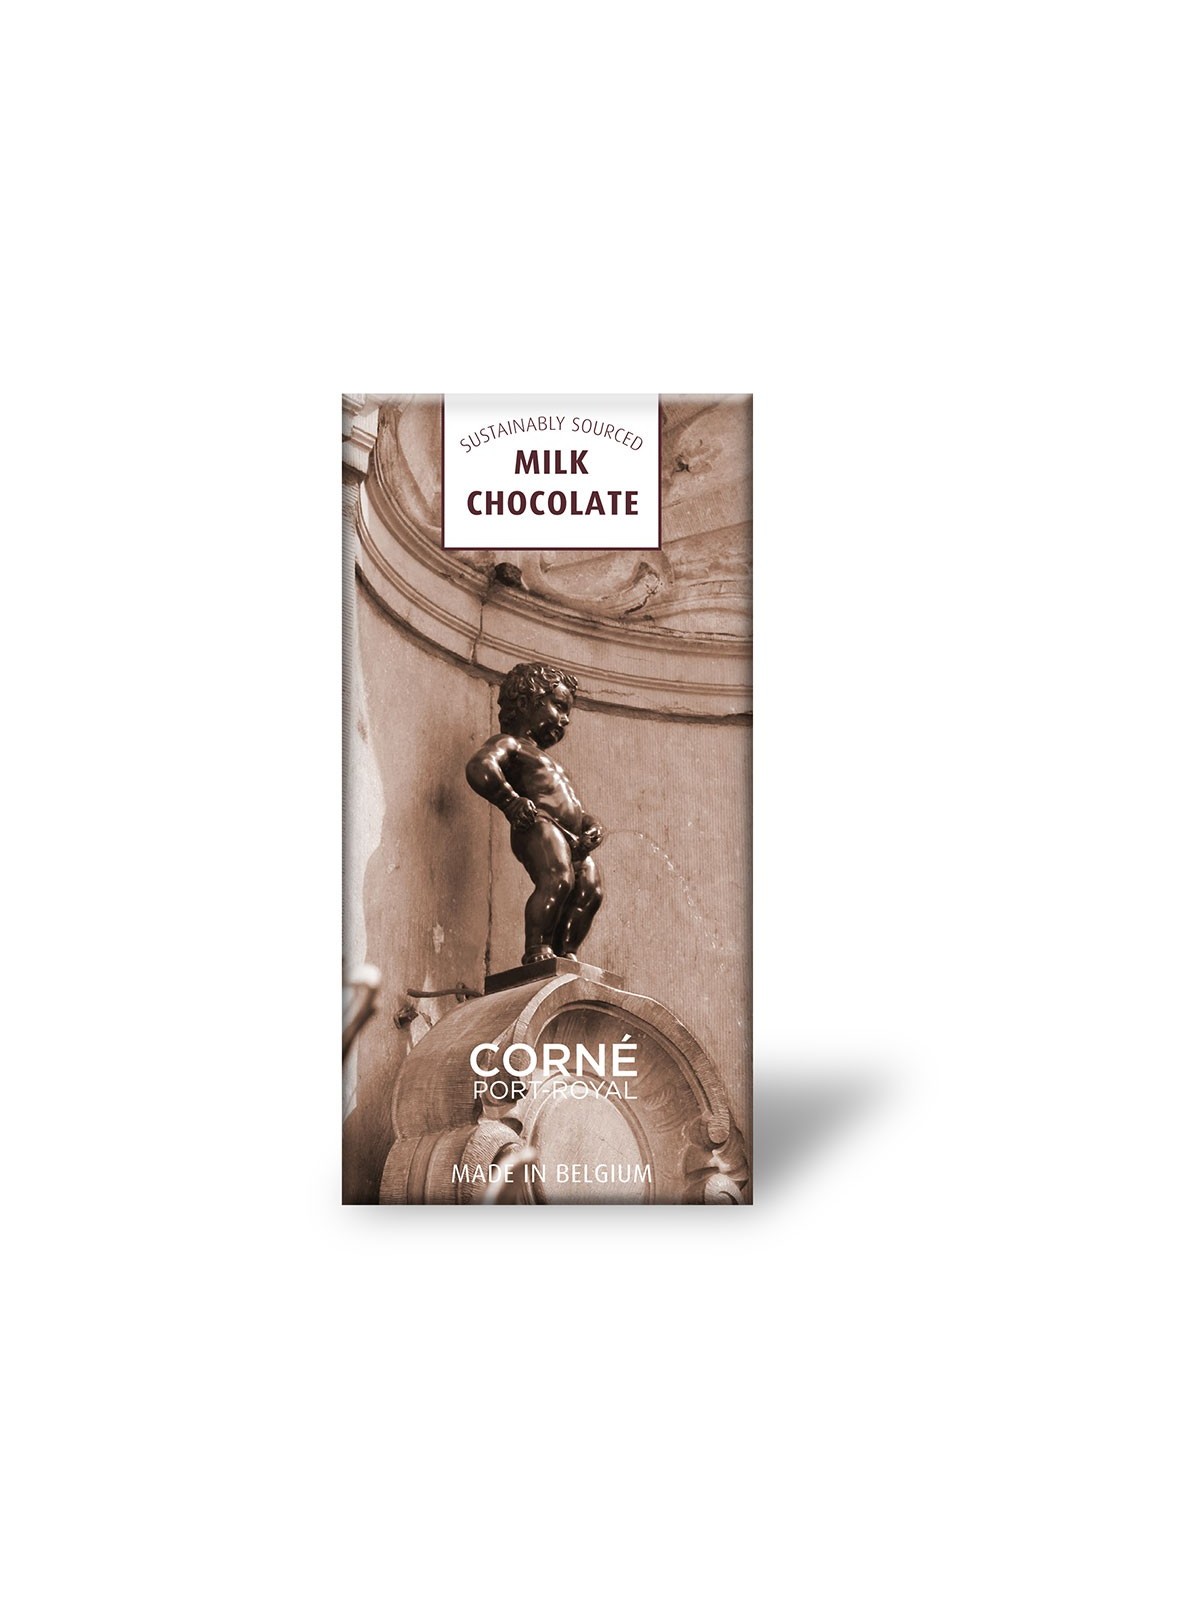 64-021 Assortiment chocolats personnalisé